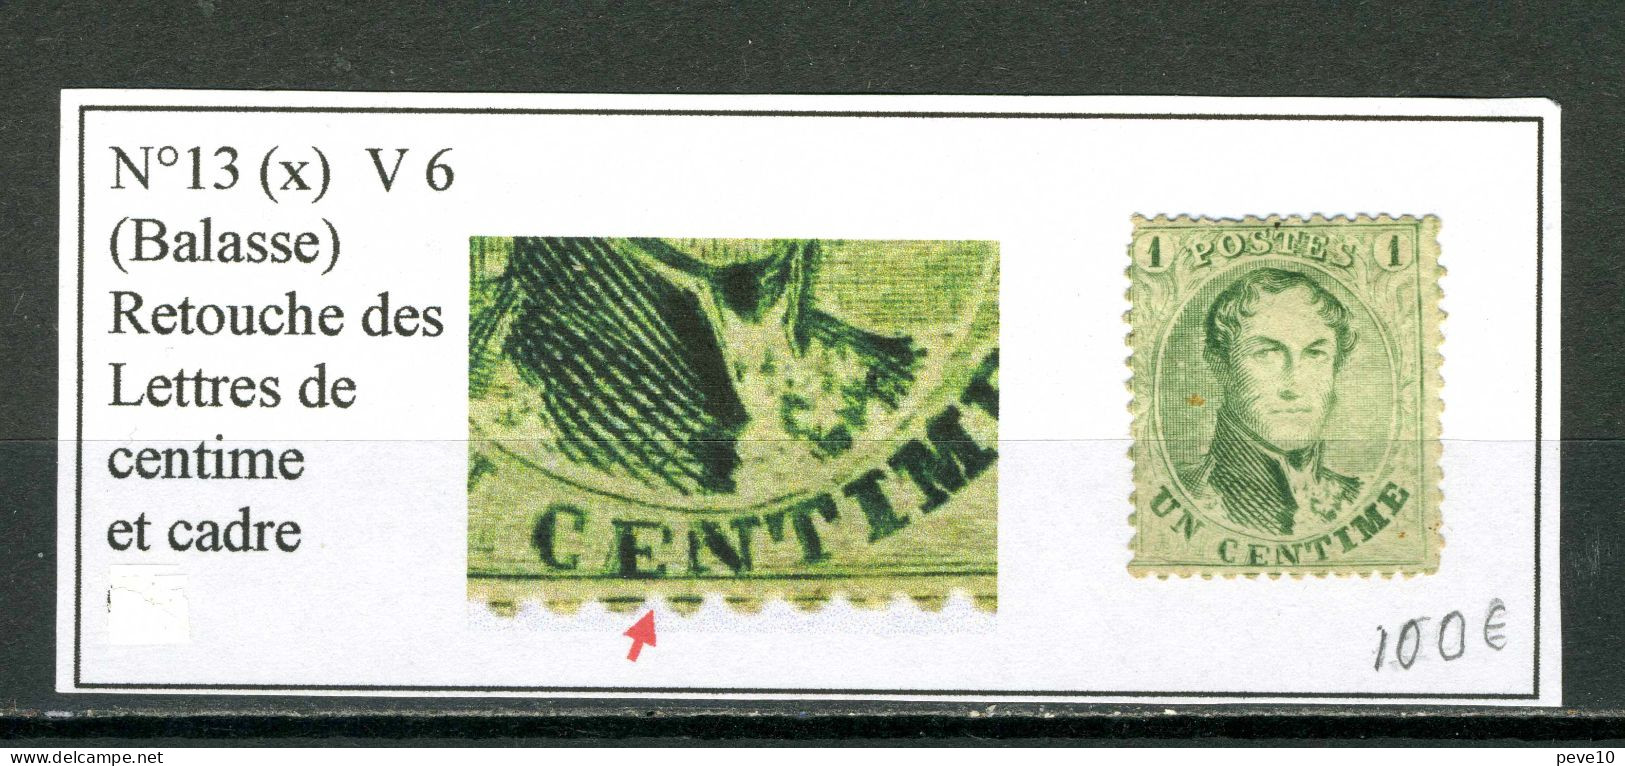 Belgique  N° 13  V6 (x)    Balasse  Retouche Des Lettres De Centime Et Cadre - Unclassified